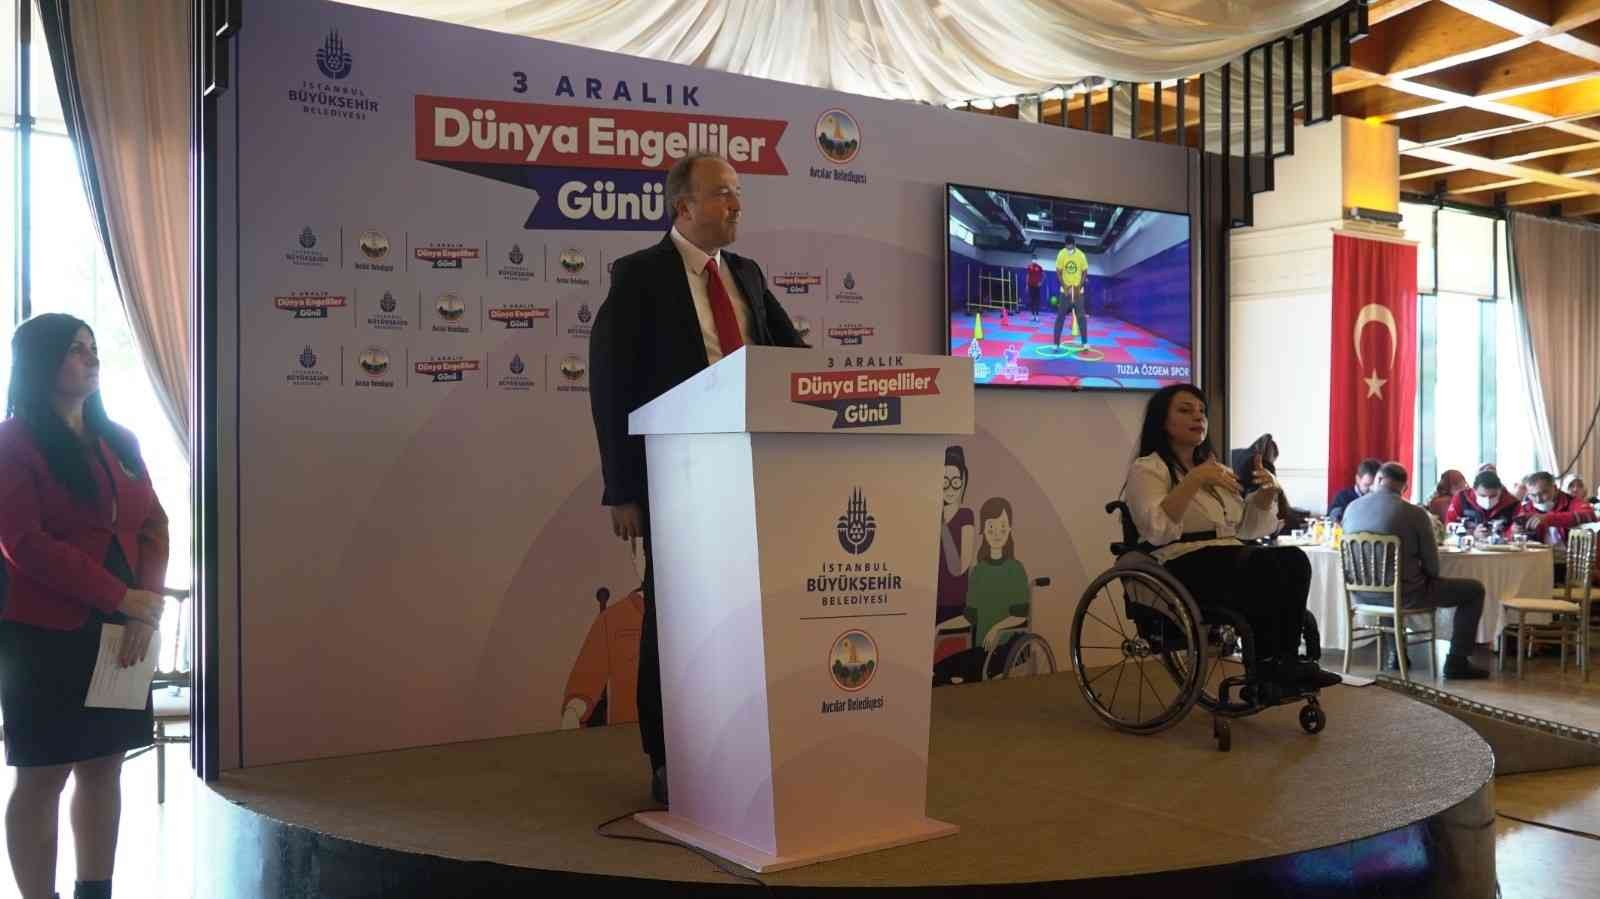 Türkiye’nin ilk engelli Belediye Başkanı, engellilerle buluştu #istanbul